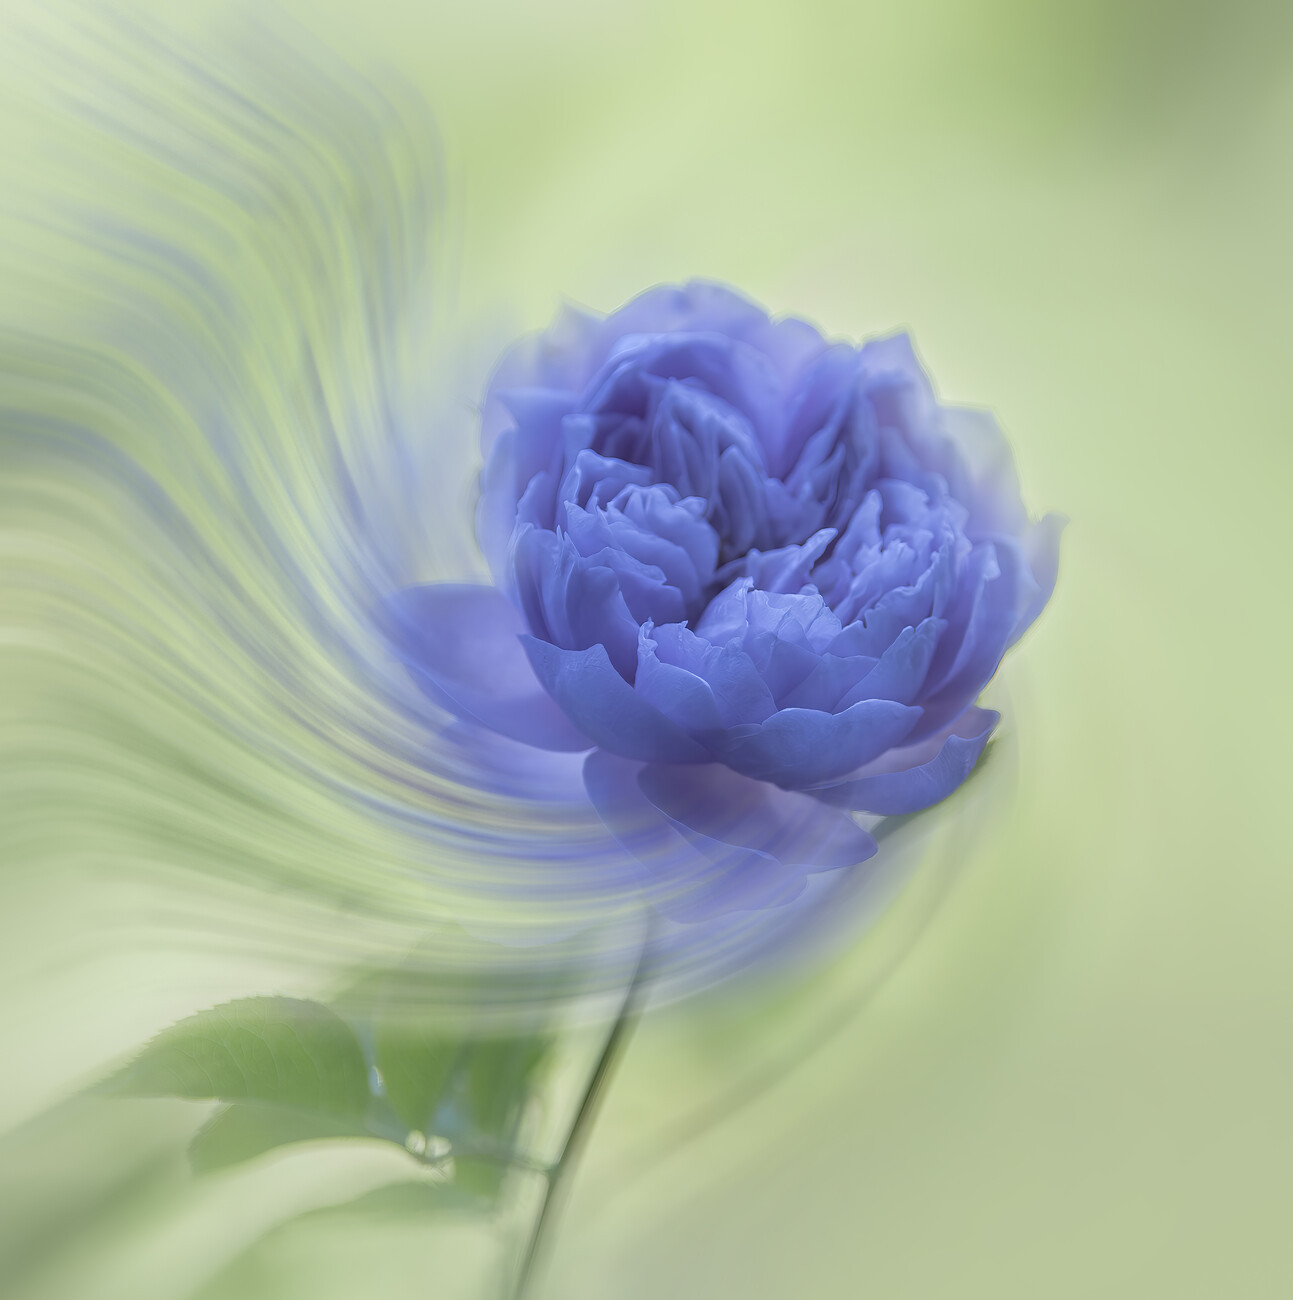 Judy Tseng Umělecká fotografie Blue rose, Judy Tseng, (40 x 40 cm)